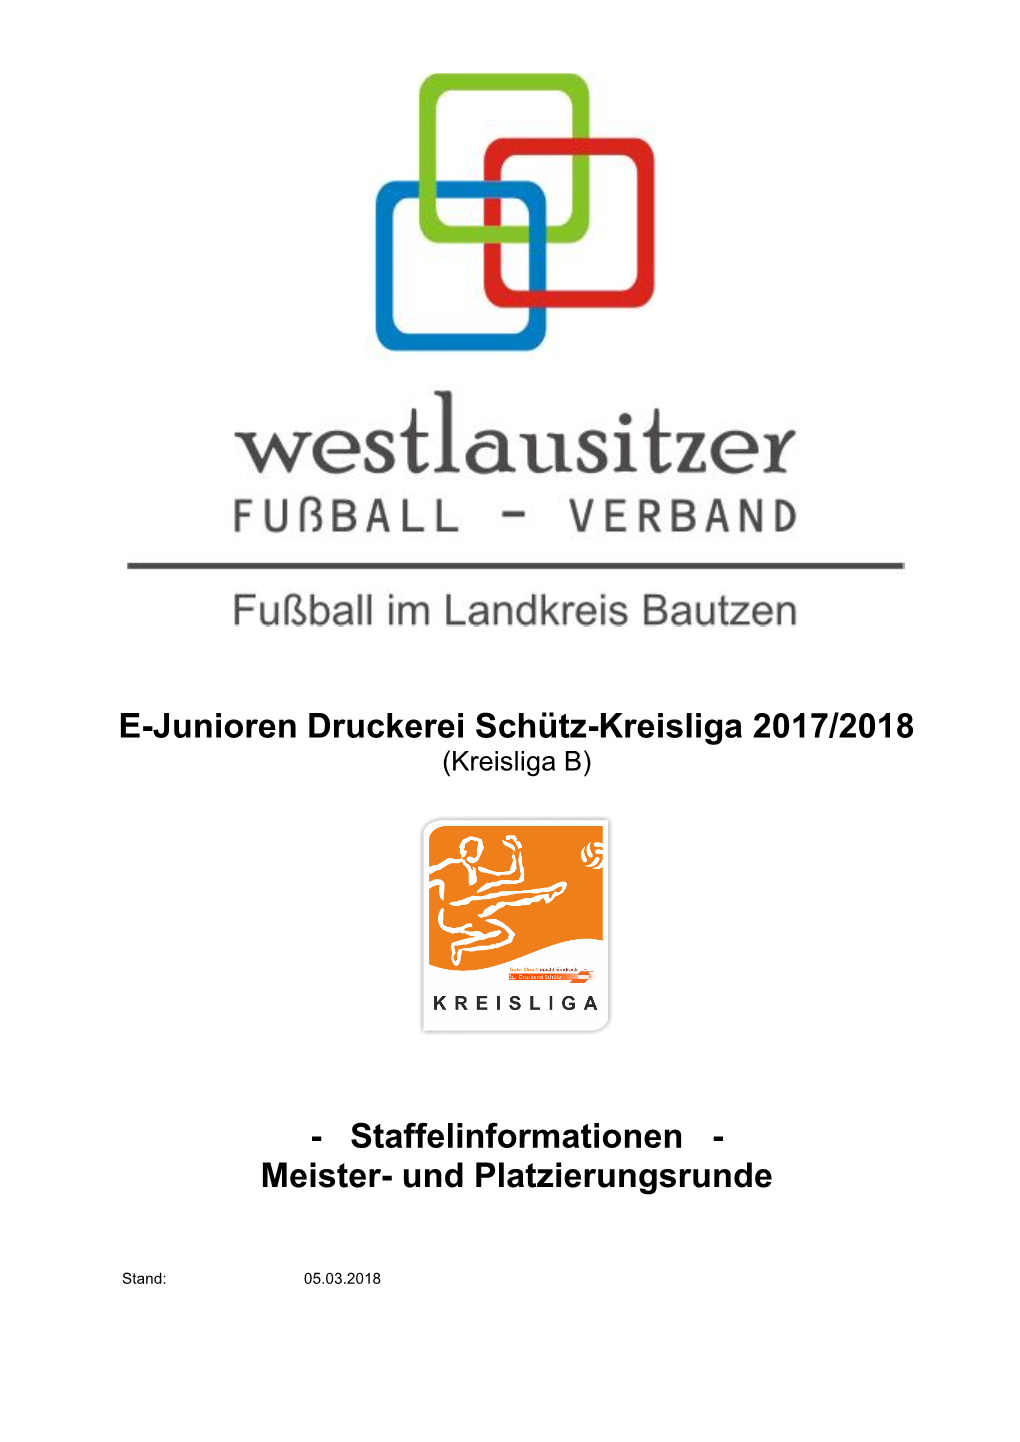 E-Junioren Druckerei Schütz-Kreisliga 2017/2018 (Kreisliga B)